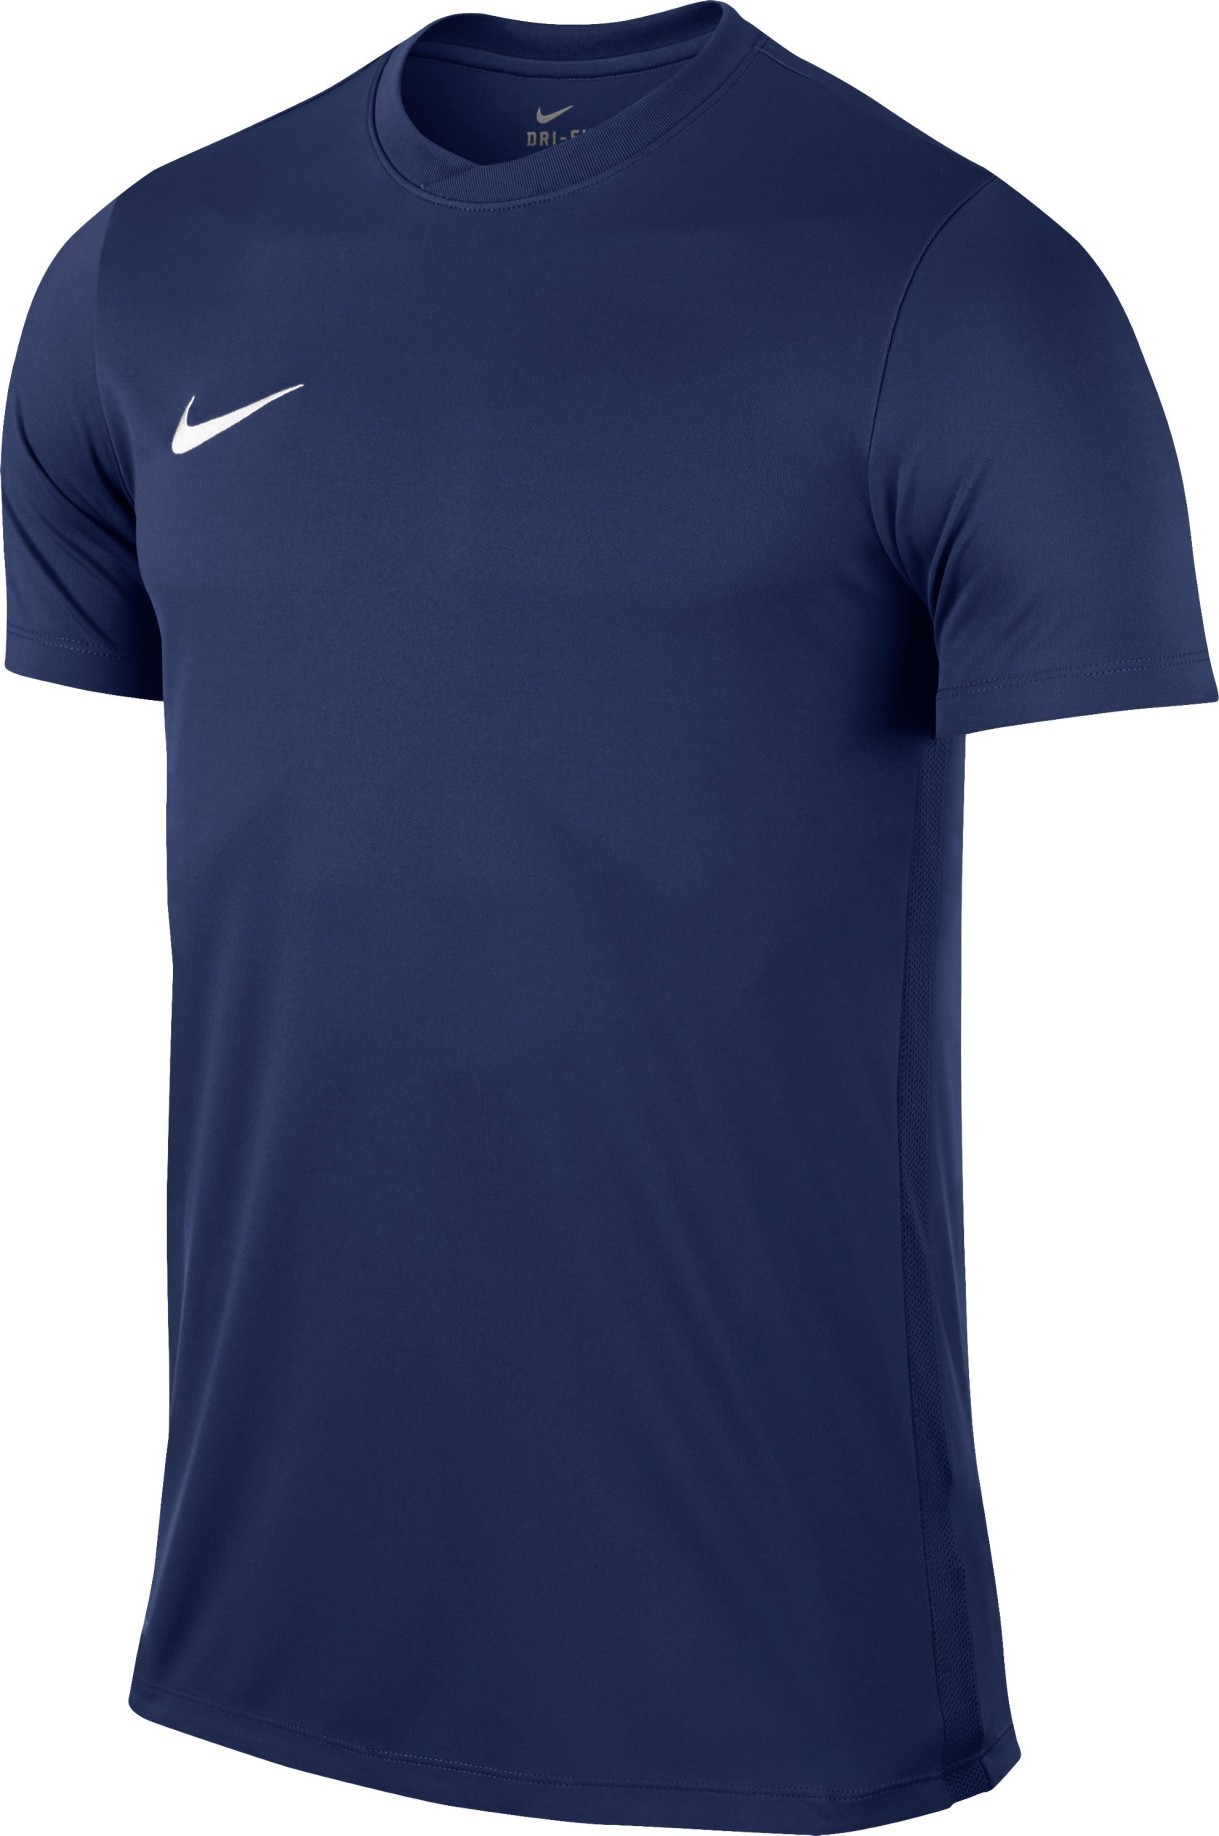 T-Shirt Calcio Nike Park VII colore Blu - Nike - SportIT.com